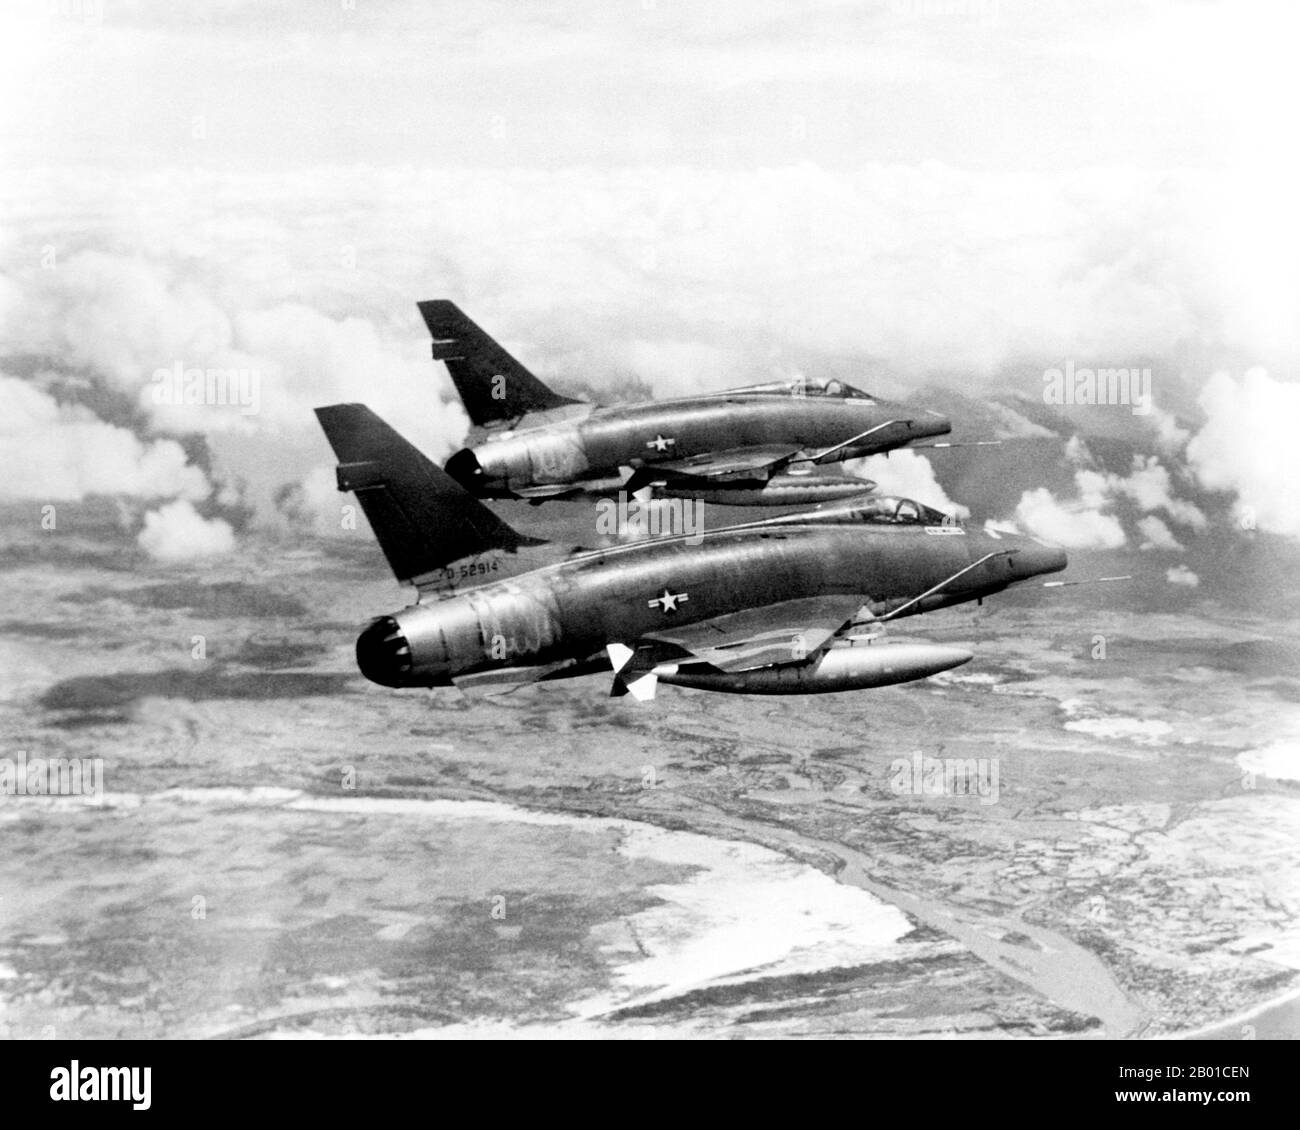 Vietnam: Zwei USAF F-100D Super Sabre Flugzeuge Streifen über Südvietnam auf ihrem Weg zu einem zugewiesenen Ziel, 1967. Das Flugzeug lieferte einen Großteil der taktischen Luftunterstützung für alliierte Bodentruppen, die in Vietnam kämpfen. Der zweite Indochina-Krieg, in Amerika als Vietnamkrieg bekannt, war ein militärischer Konflikt aus der Zeit des Kalten Krieges, der sich in Vietnam, Laos und Kambodscha vom 1. November 1955 bis zum Fall Saigons am 30. April 1975 ereignete. Dieser Krieg folgte dem ersten Indochina-Krieg und wurde zwischen Nordvietnam, unterstützt von seinen kommunistischen Verbündeten, und der Regierung von Südvietnam, unterstützt von den USA, geführt Stockfoto